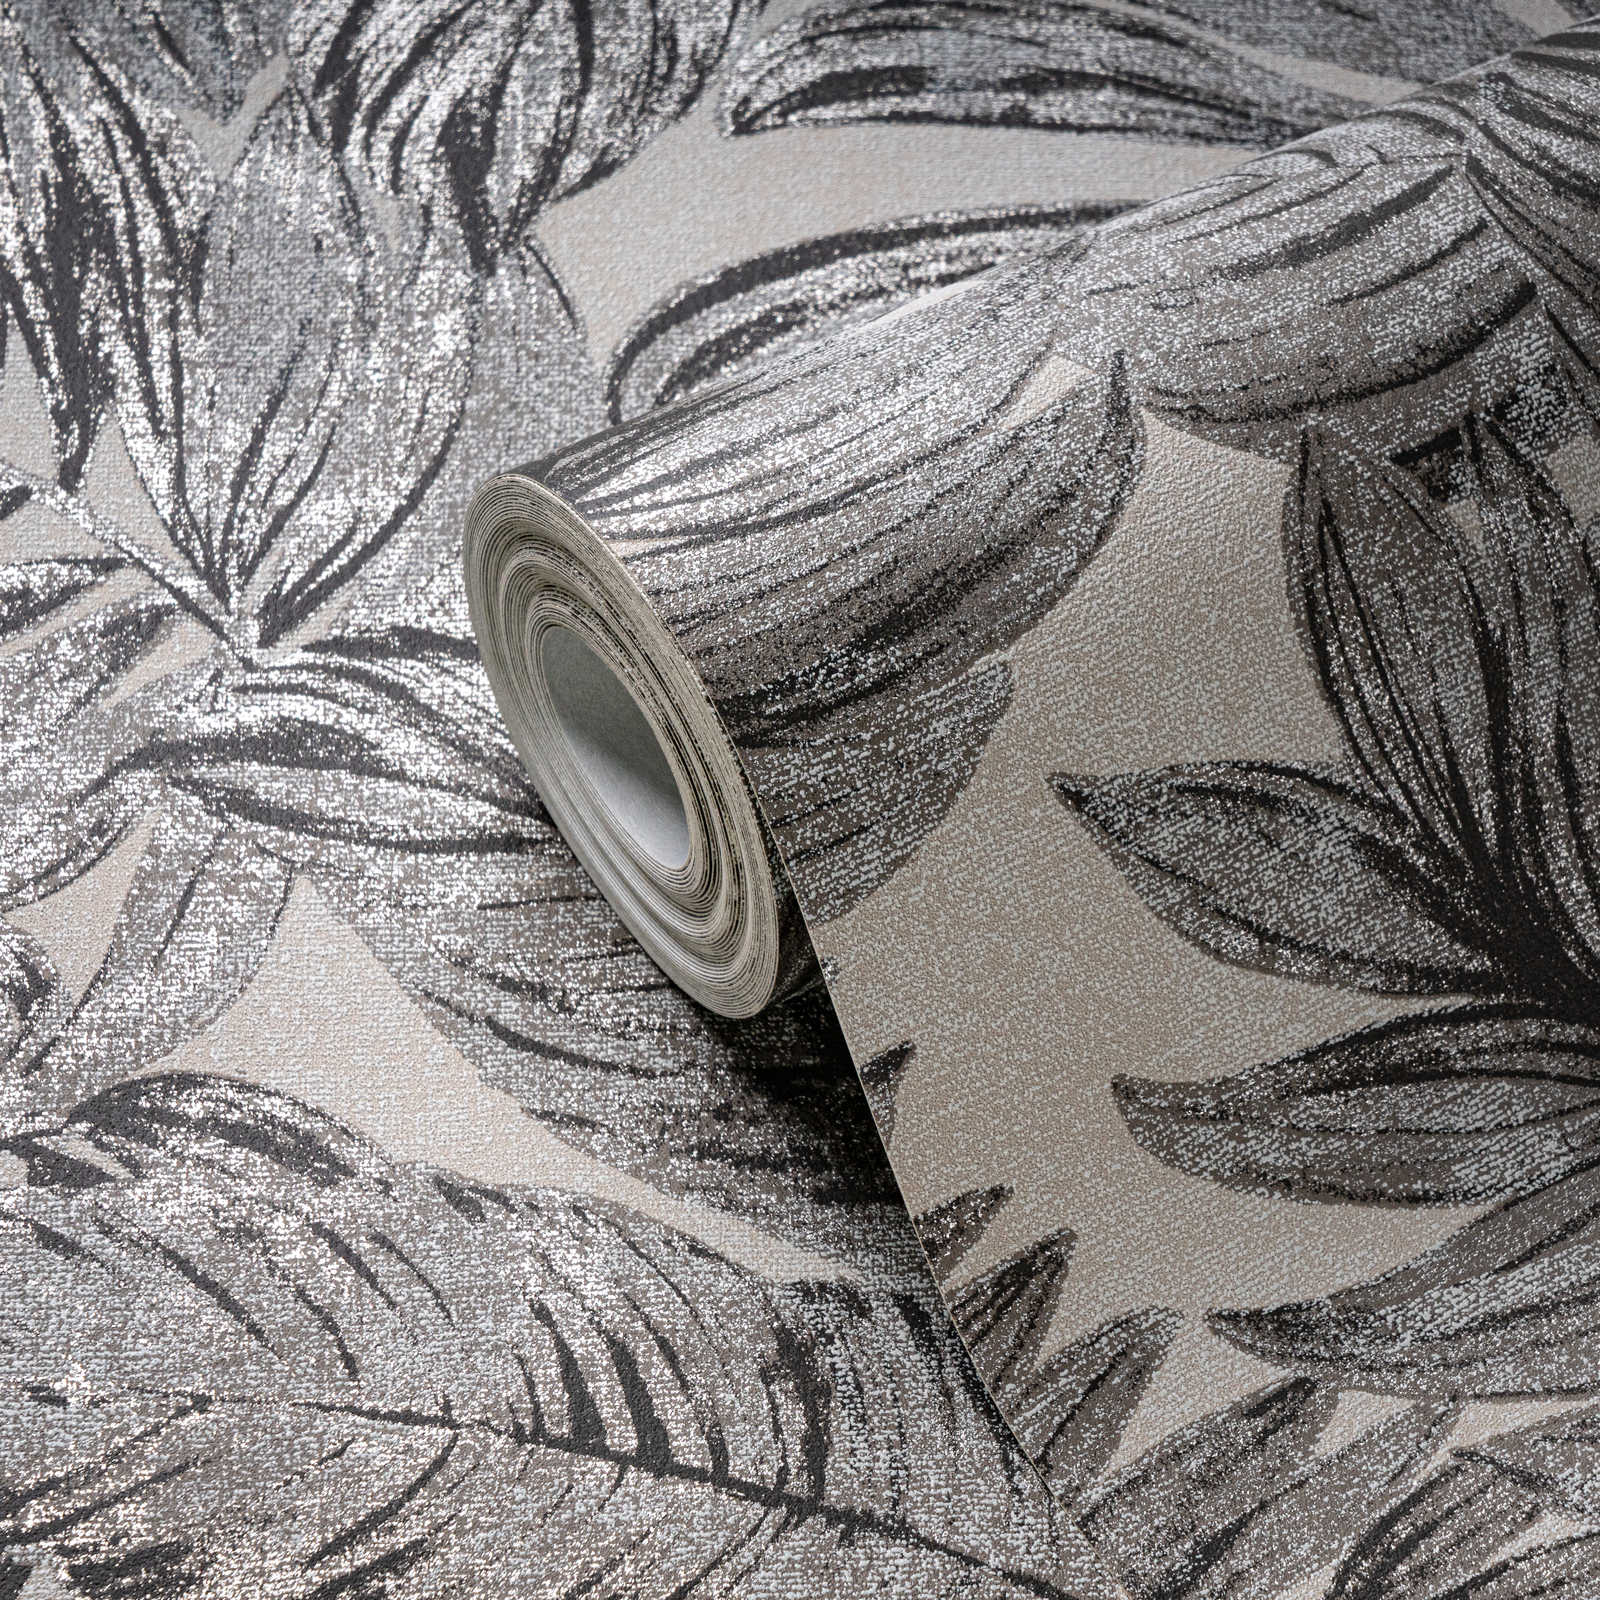             Papel pintado no tejido con motivo de hojas de selva - marrón, gris, beige
        